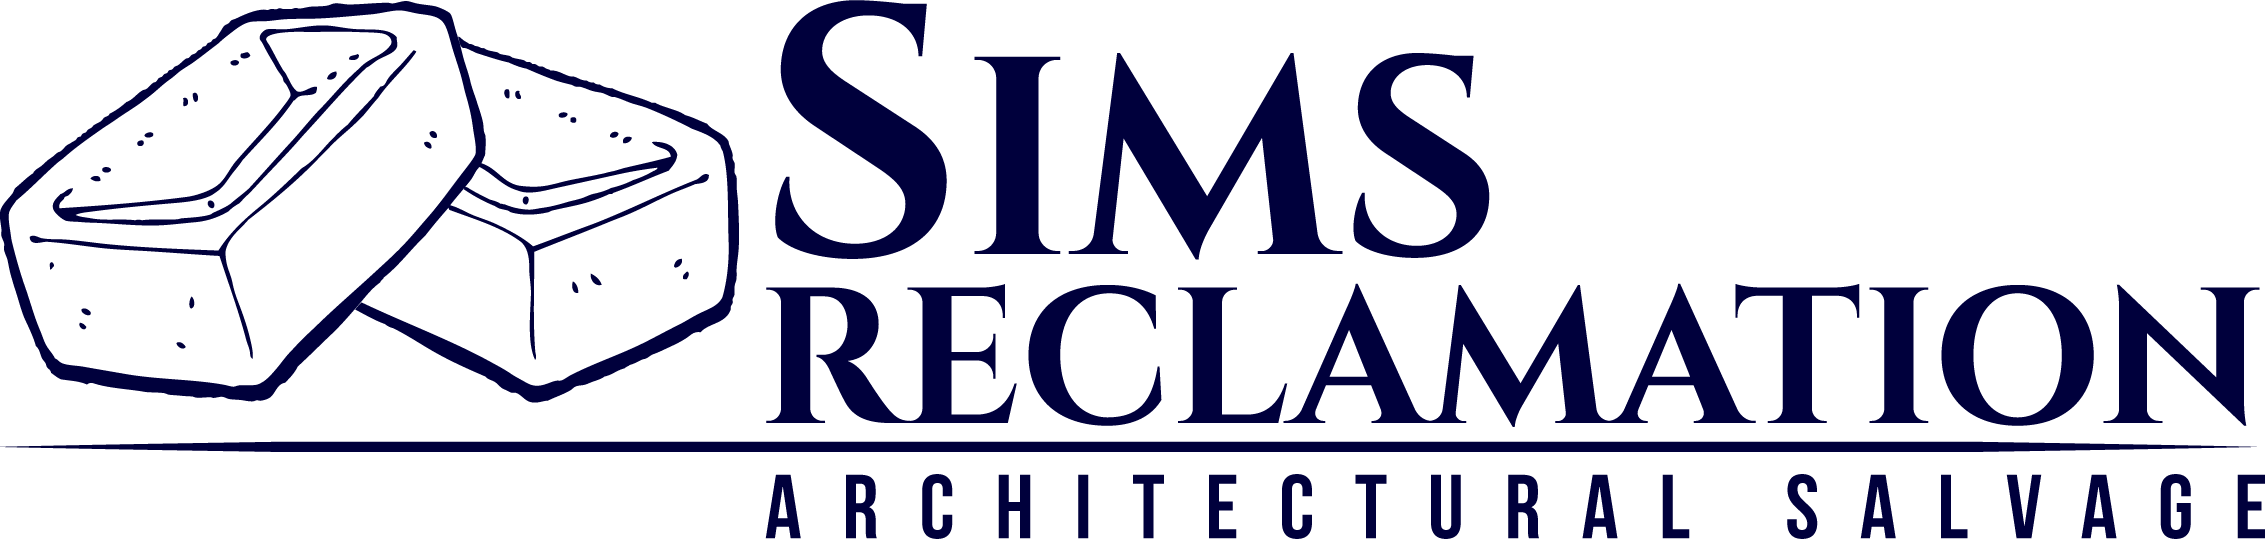 Sims reclaim